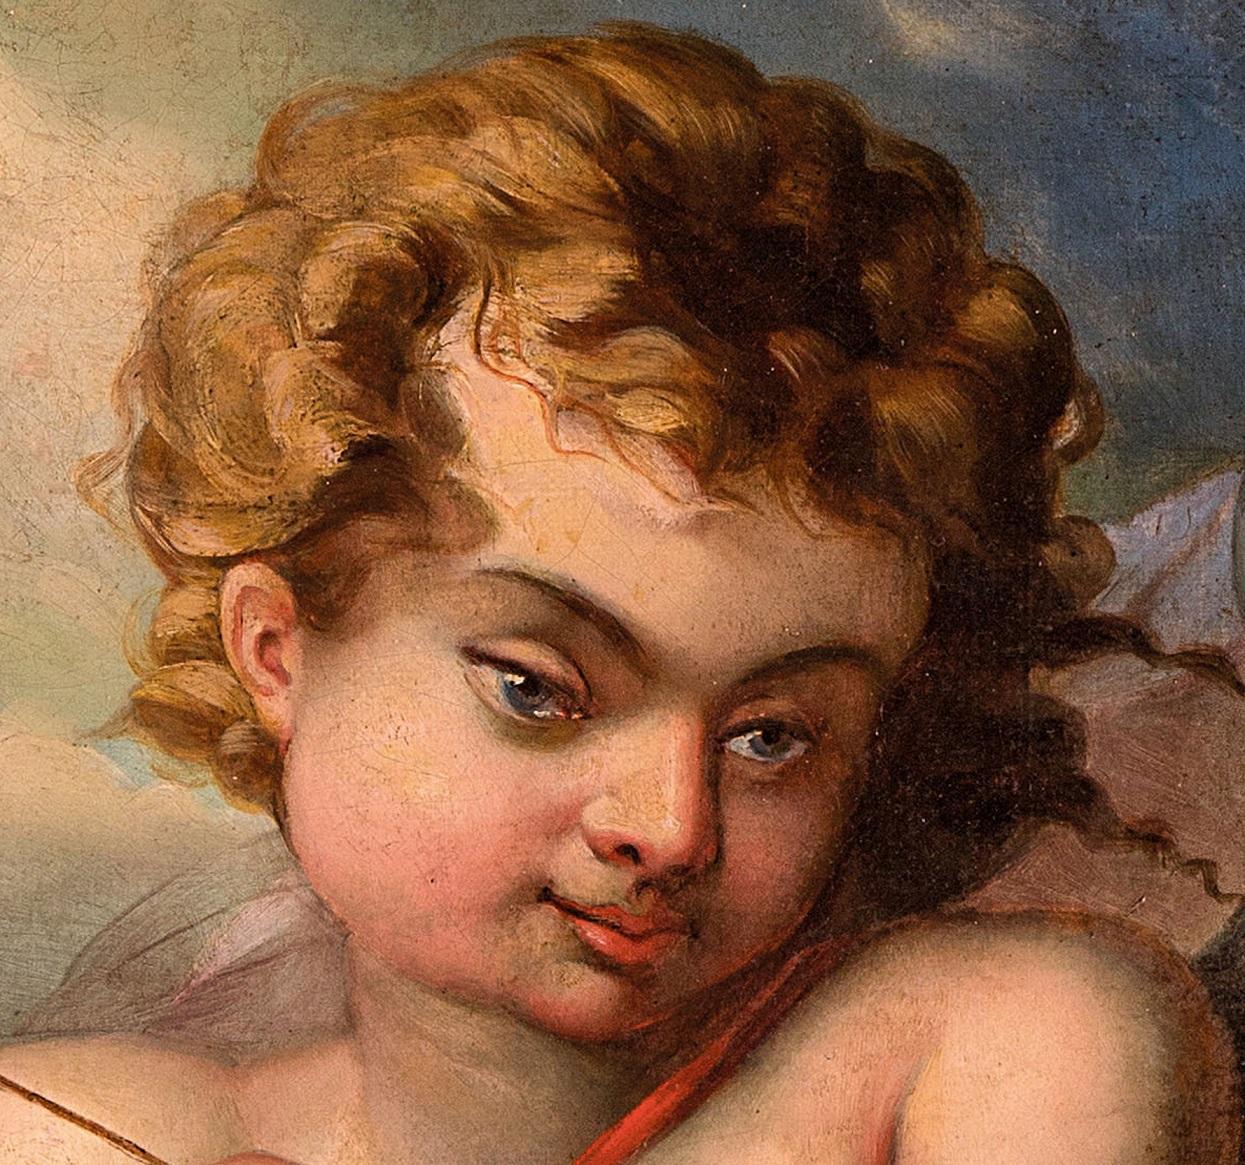 Cupid Paint Oil on canvas France Neo classicism Art Quality Love 18th century - Old Masters Painting by Entourage de François Boucher (Paris 1703 - 1770)